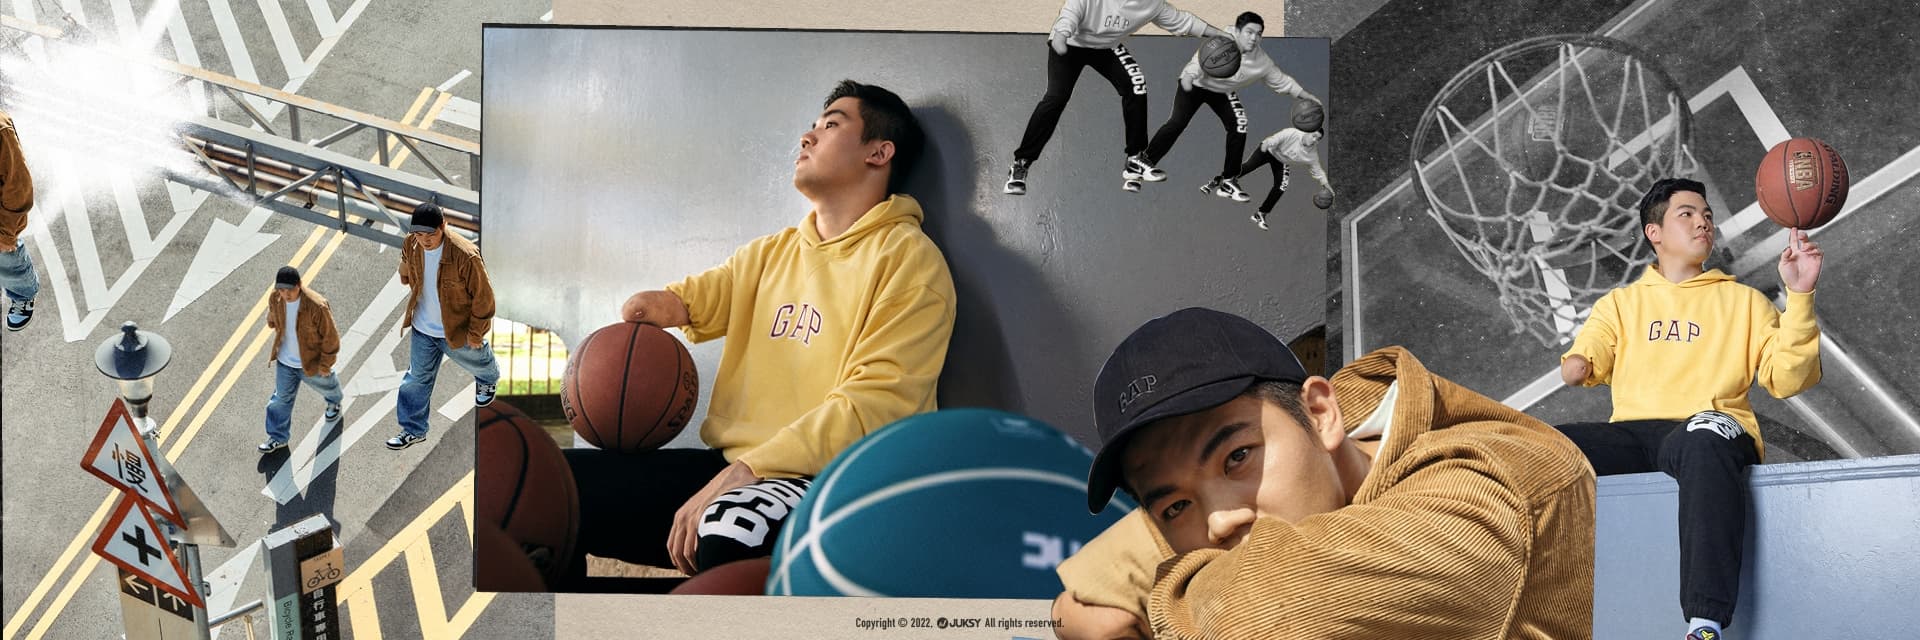 獨臂籃球員范弘昊專訪 - 「Gap是＿無畏差異」 #異YOUNG相吸：0.1%的不同更成就了生命斑斕！